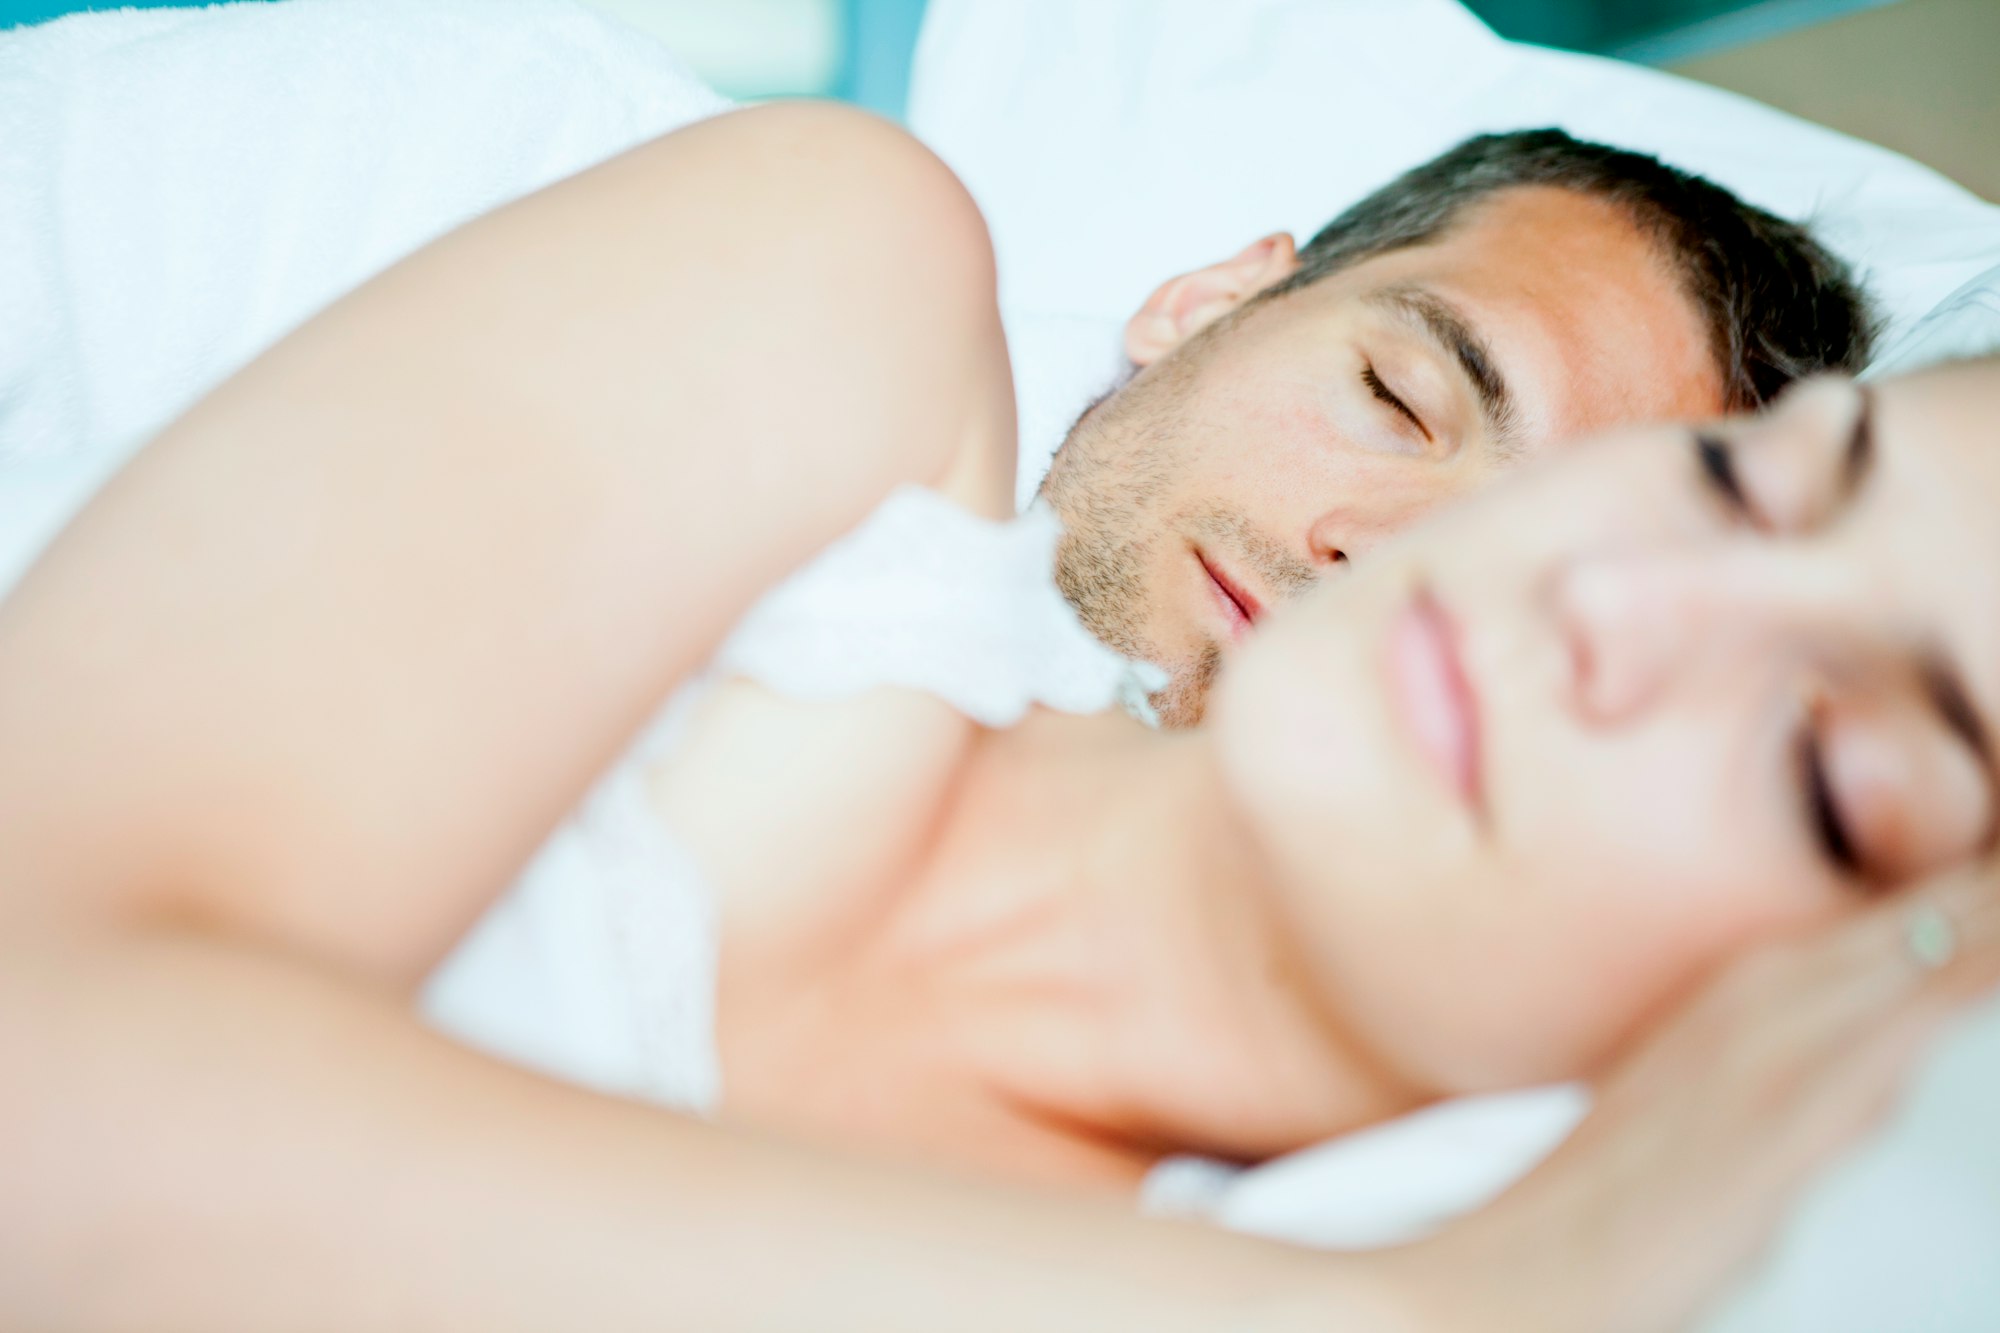 Sleeping together on white bedsheets, taking melatonin while breastfeeding